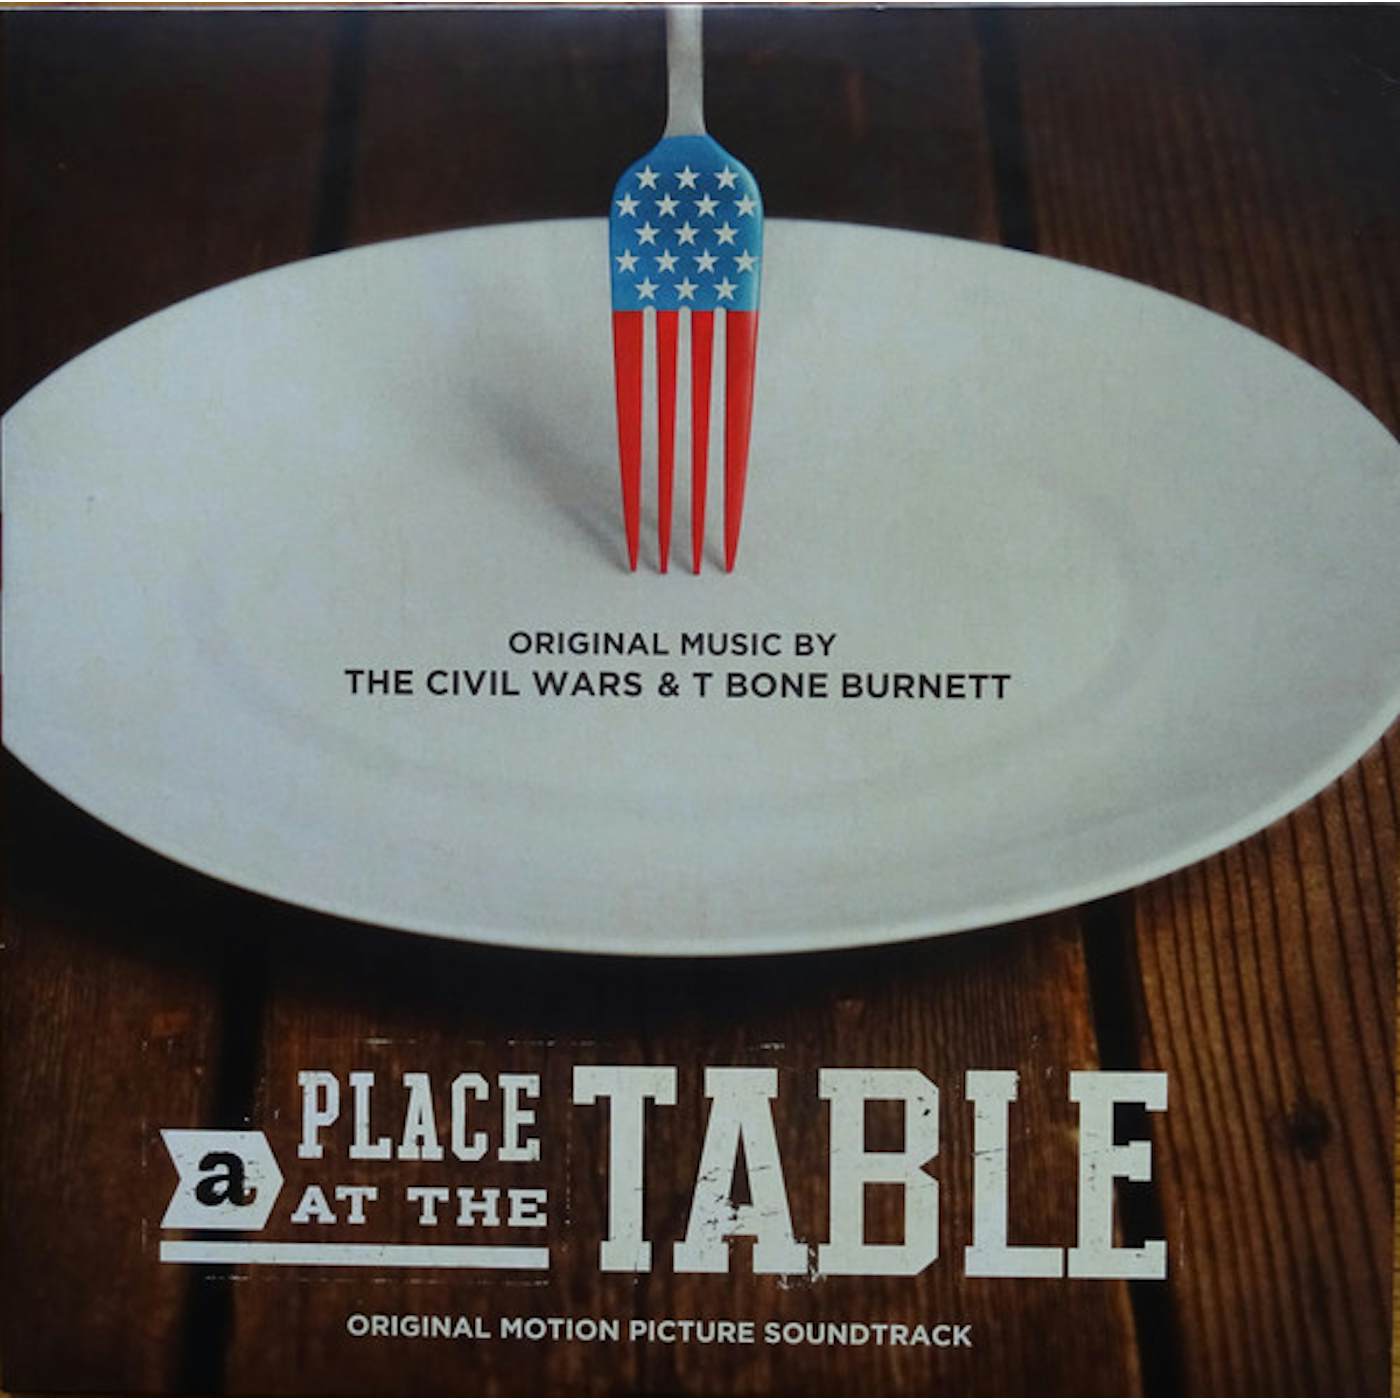 The Civil Wars & T Bone Burnett PLACE AT THE TABLE Vinyl Record